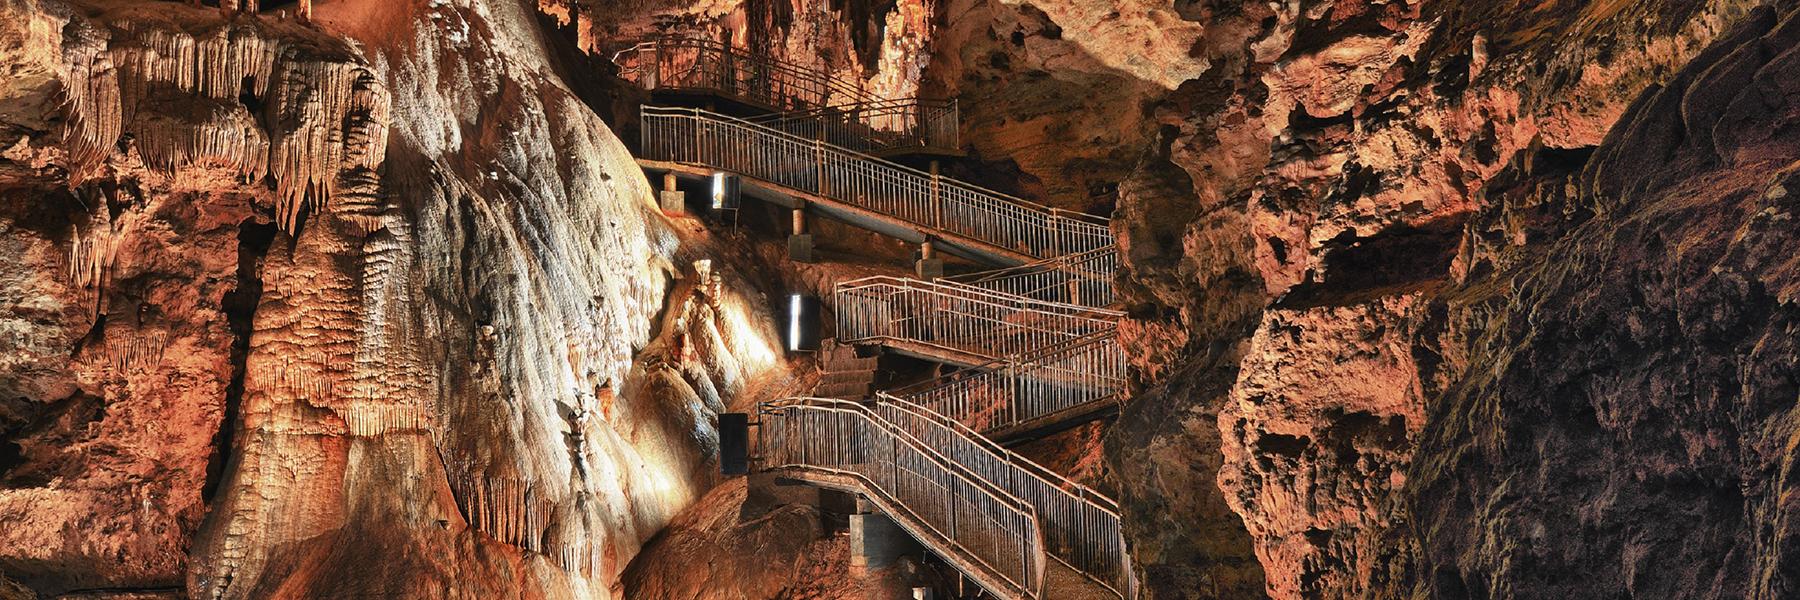 梅拉梅克洞穴提供了一些世界上最稀有和最大的洞穴结构.